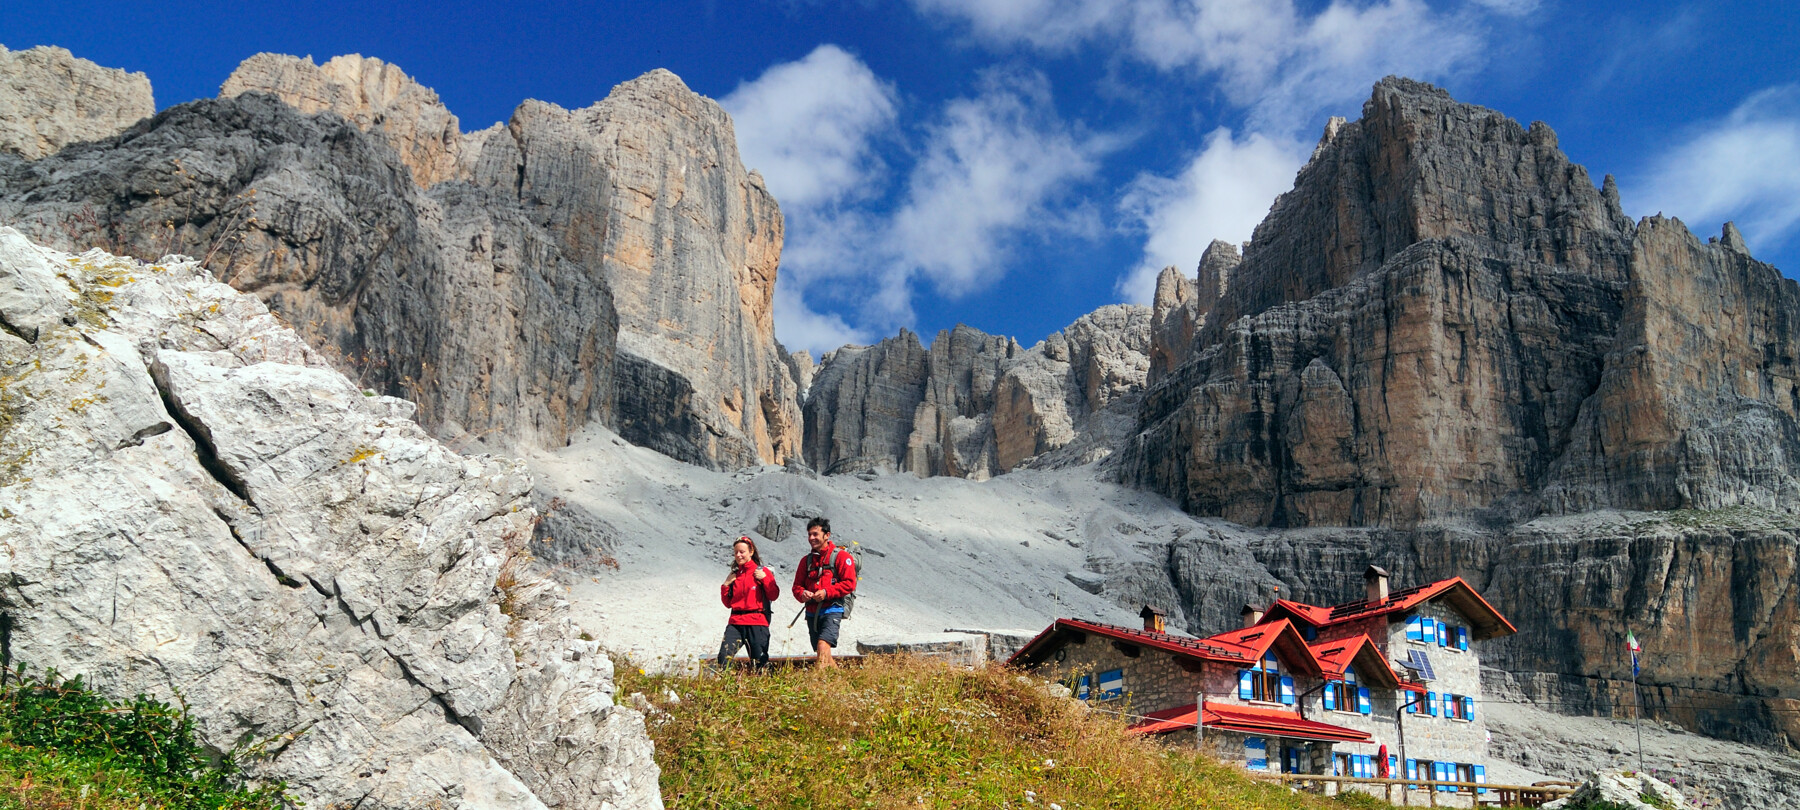 Bergsteigen in den Dolomiten – die Via delle Normali